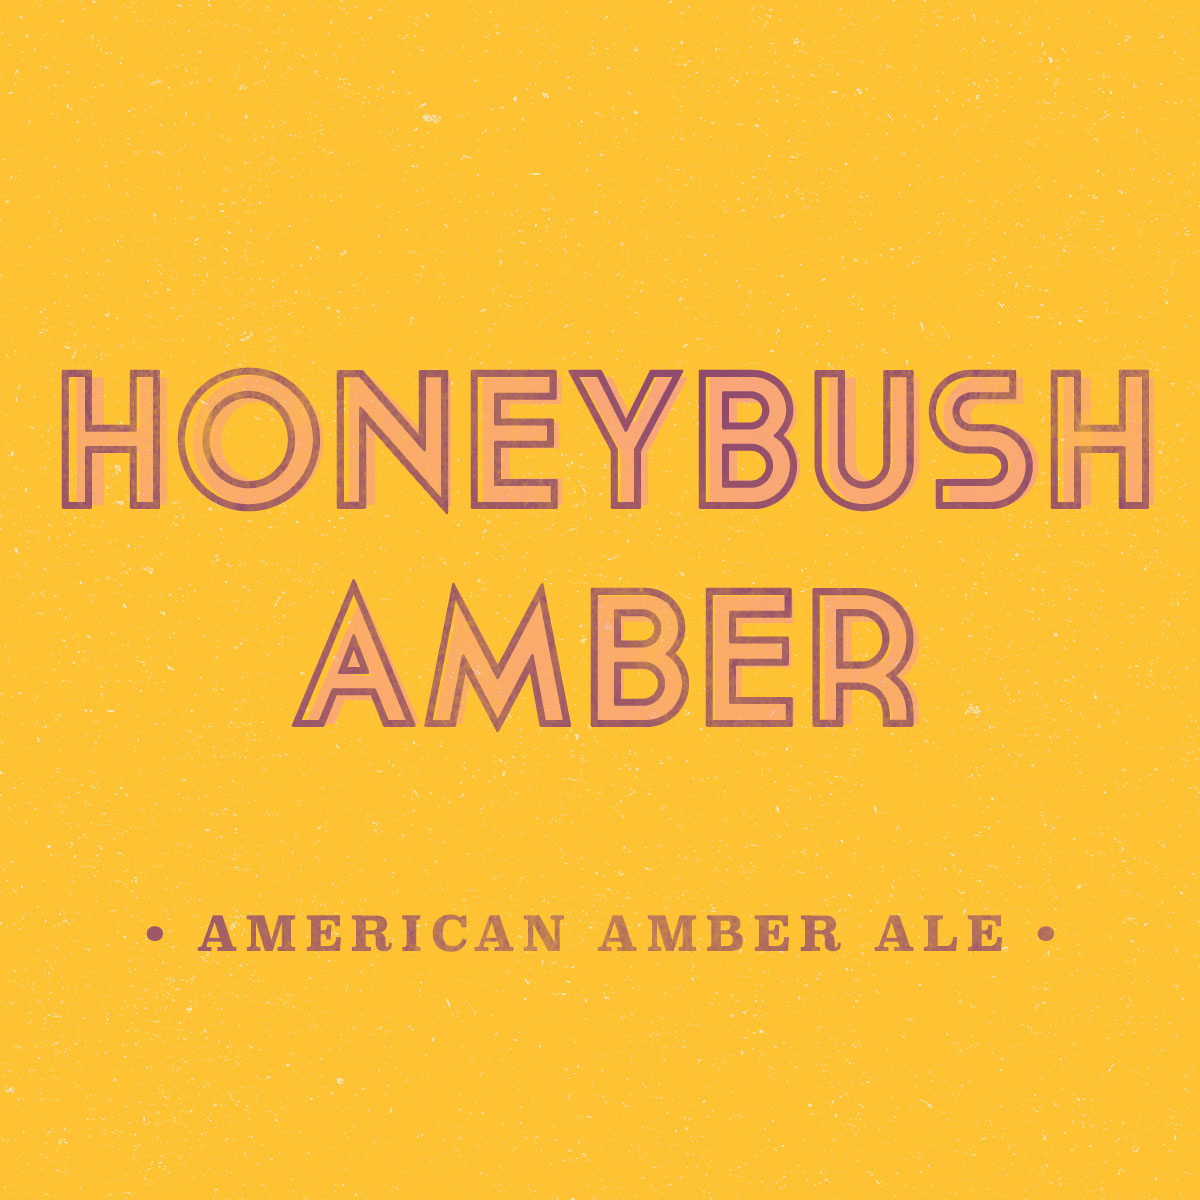 Honeybush Amber